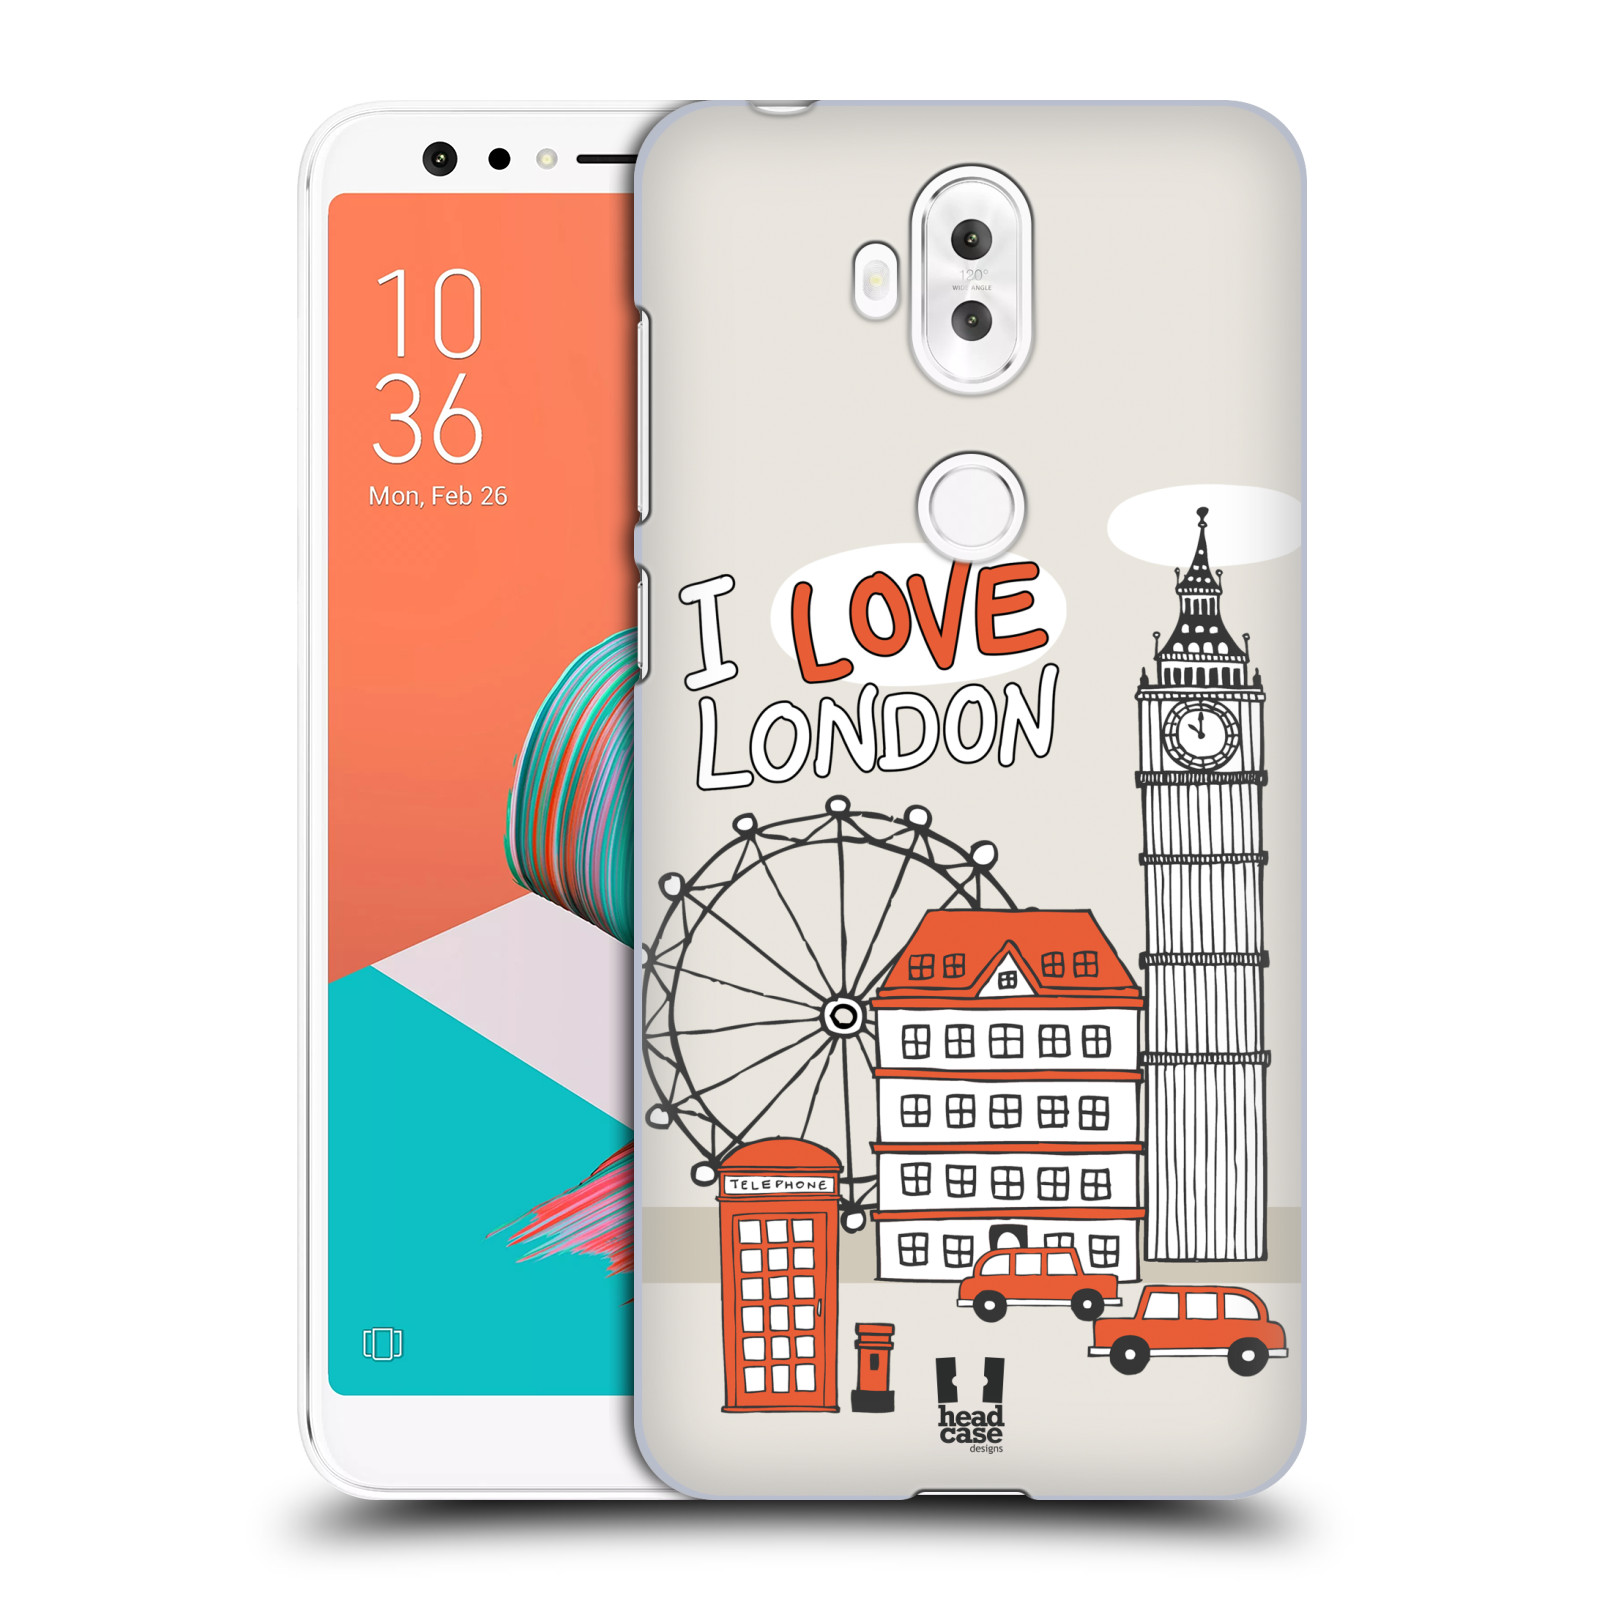 HEAD CASE plastový obal na mobil Asus Zenfone 5 LITE ZC600KL vzor Kreslená městečka ČERVENÁ, Anglie, Londýn, I LOVE LONDON